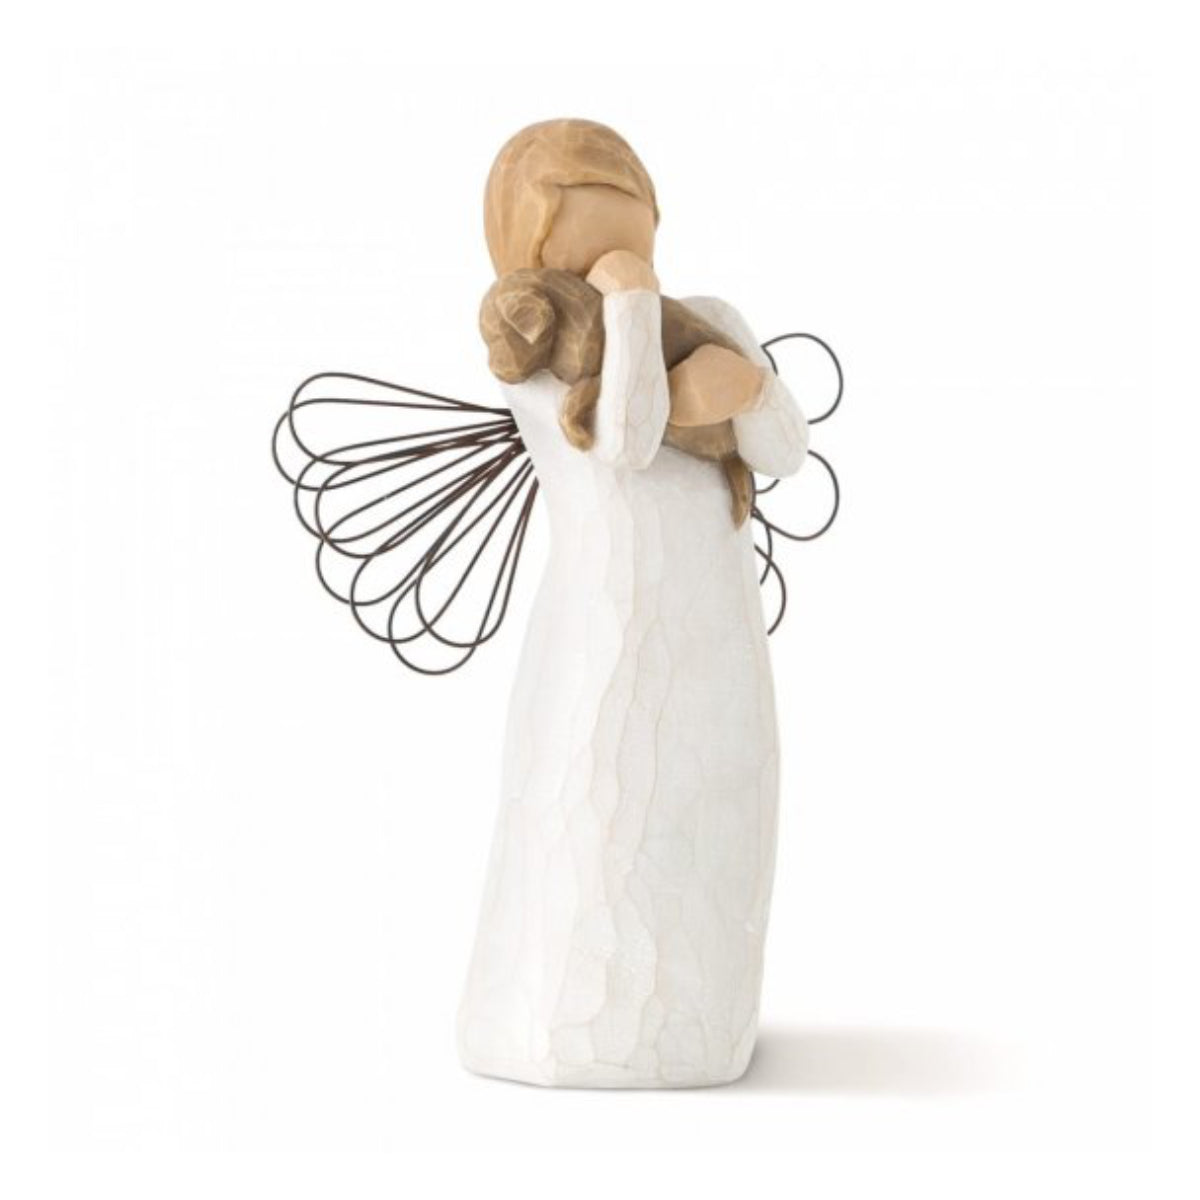 Willow Tree é uma linha íntima de estatuetas criada pela artista Susan Lordi representativas de: amor, proximidade, cura, coragem, esperança, família entre outras emoções que encontramos na vida.  Envolvida numa caixa com a mensagem: 'Para aqueles que partiham o espírito de amizade'.